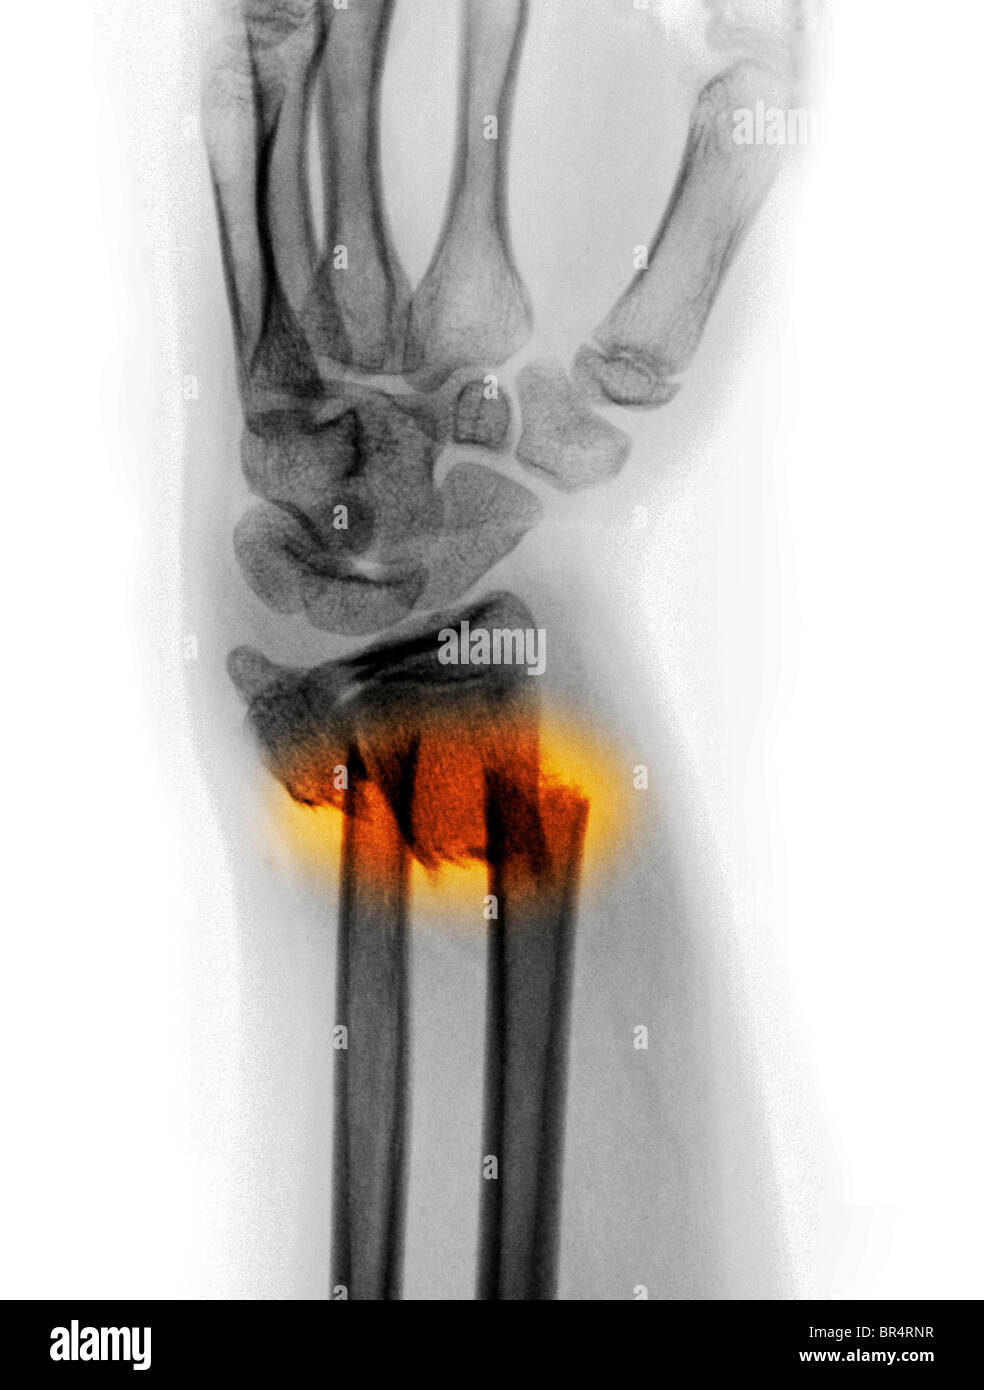 Radius et cubitus déplacées fracture de l'avant-bras d'une jeune fille de 12 ans Banque D'Images